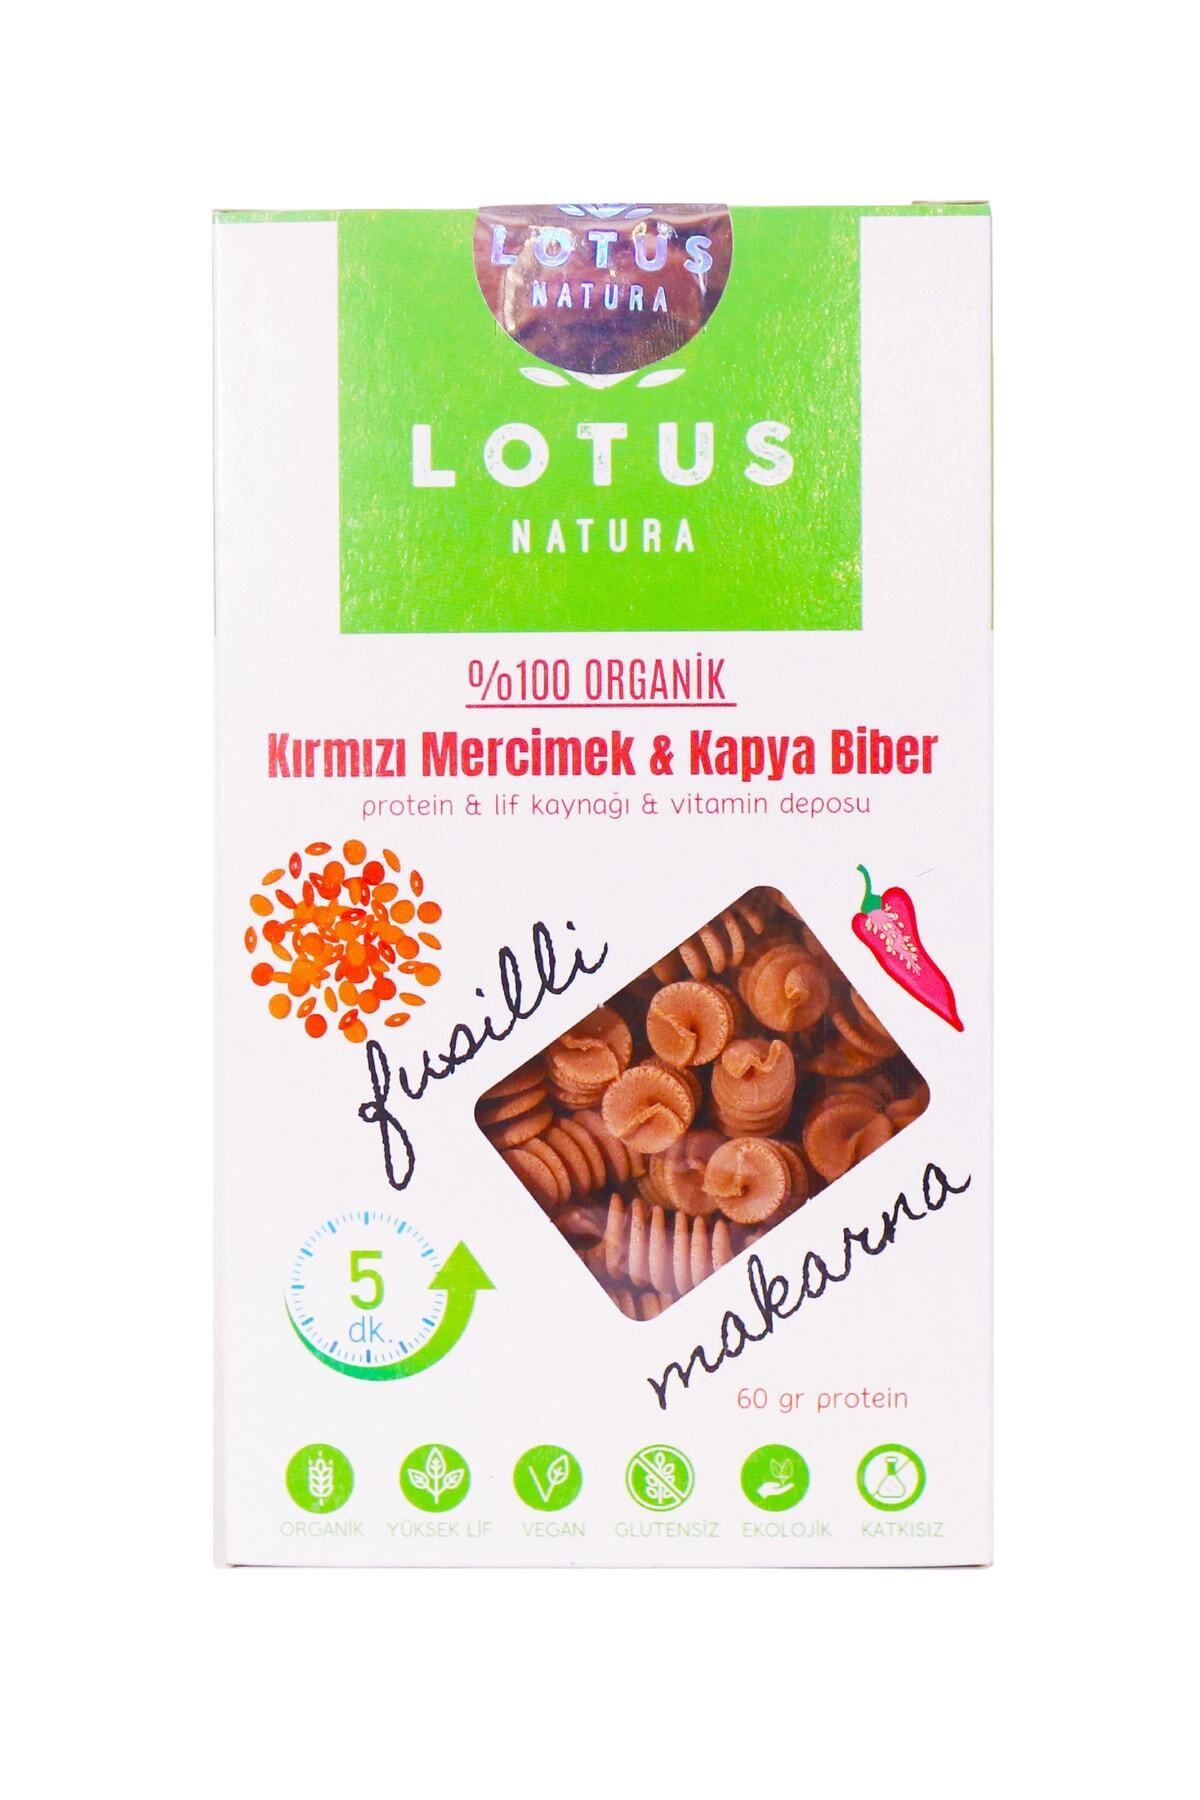 Lotus Natura Organik Glutensiz Kırmızı Mercimek & Kapya Biber Makarnası (FUSİLLİ) 200gr